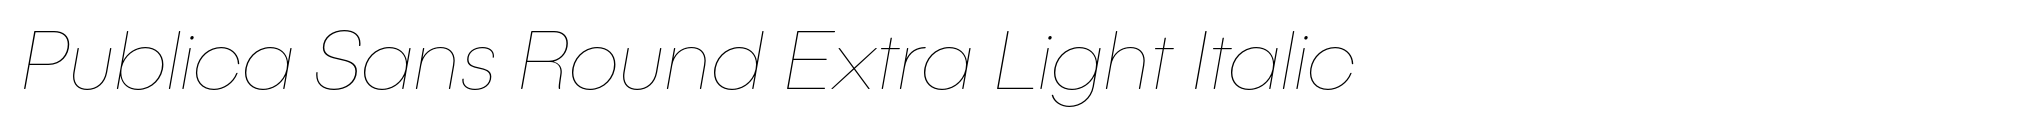 Publica Sans Round Extra Light Italic image